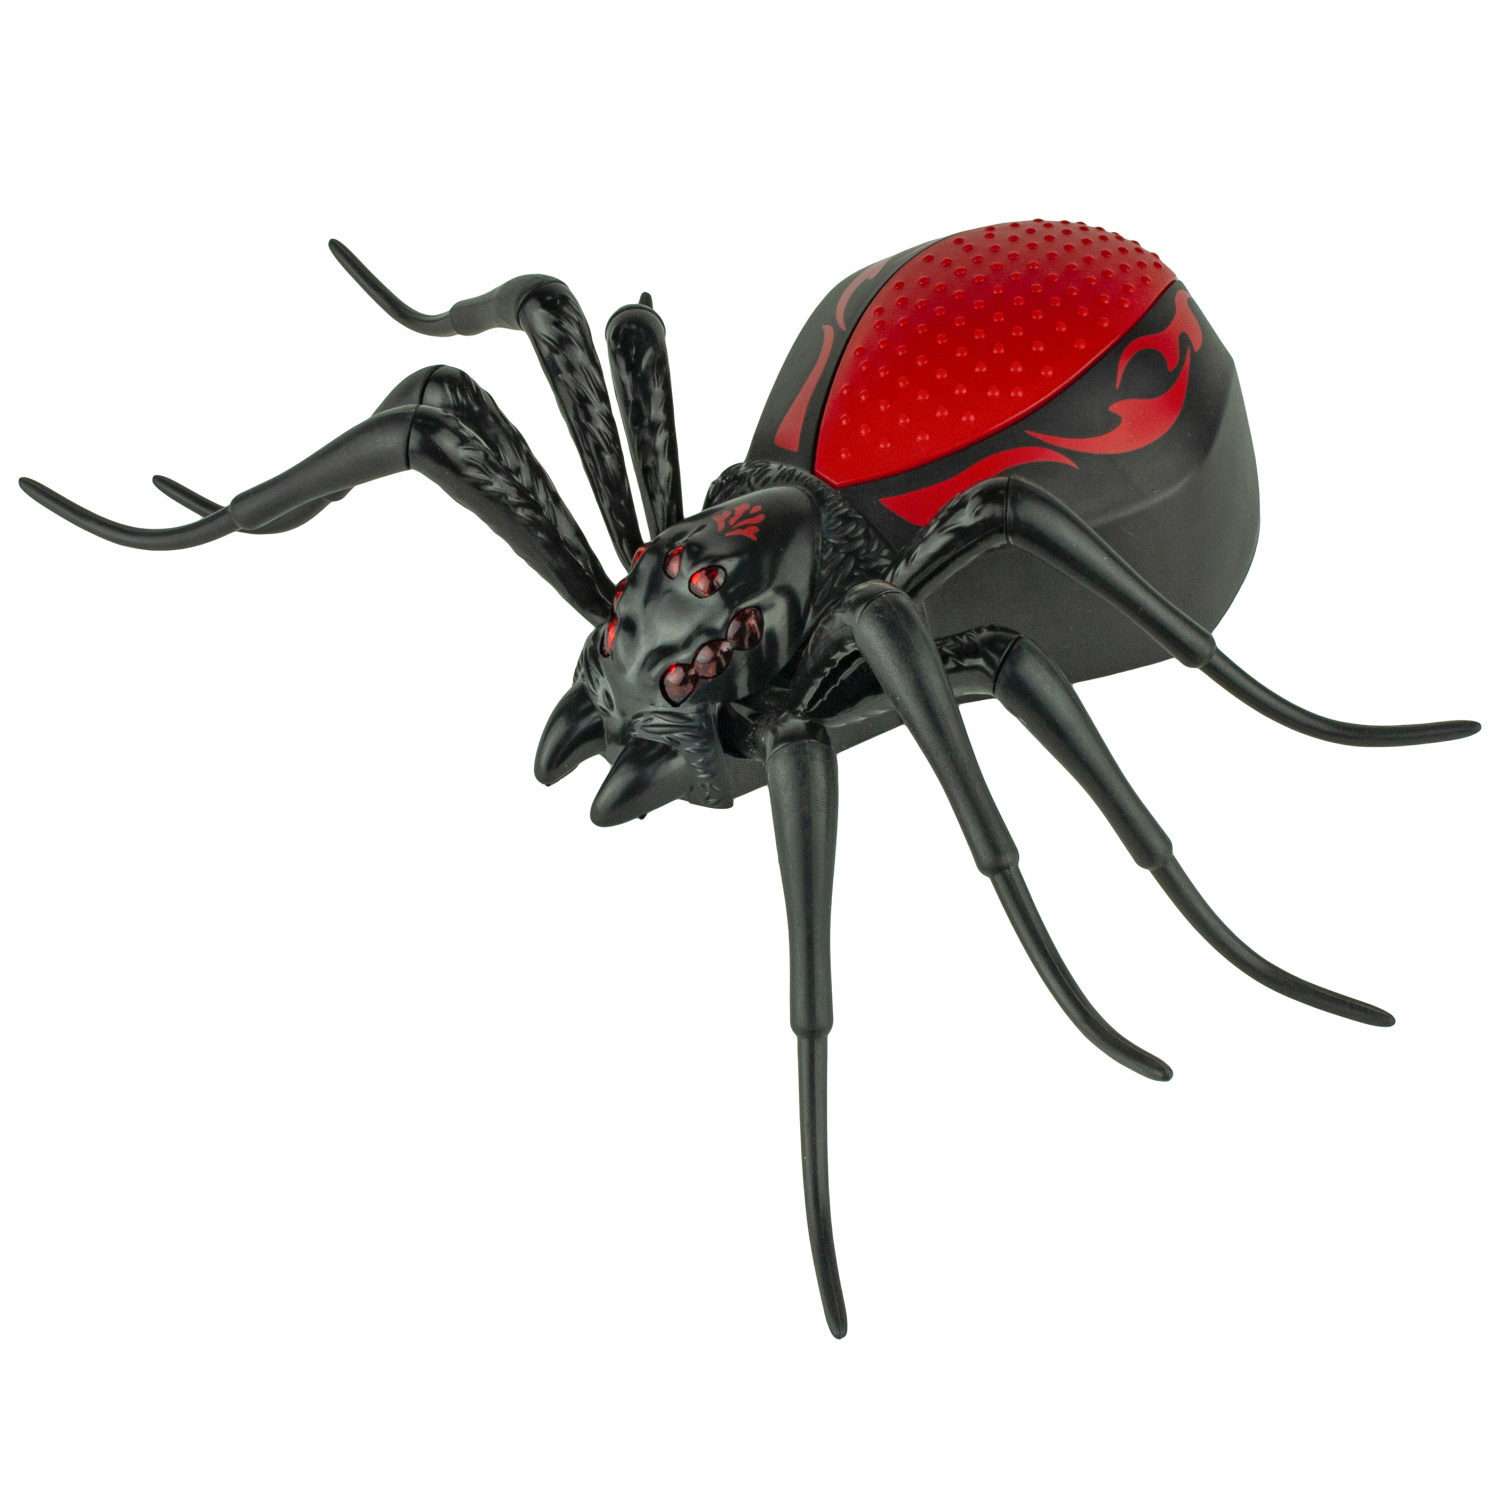 Интерактивная игрушка Robo Life Робо-паук черно- красный со звуковыми световыми и эффектами движения - фото 1